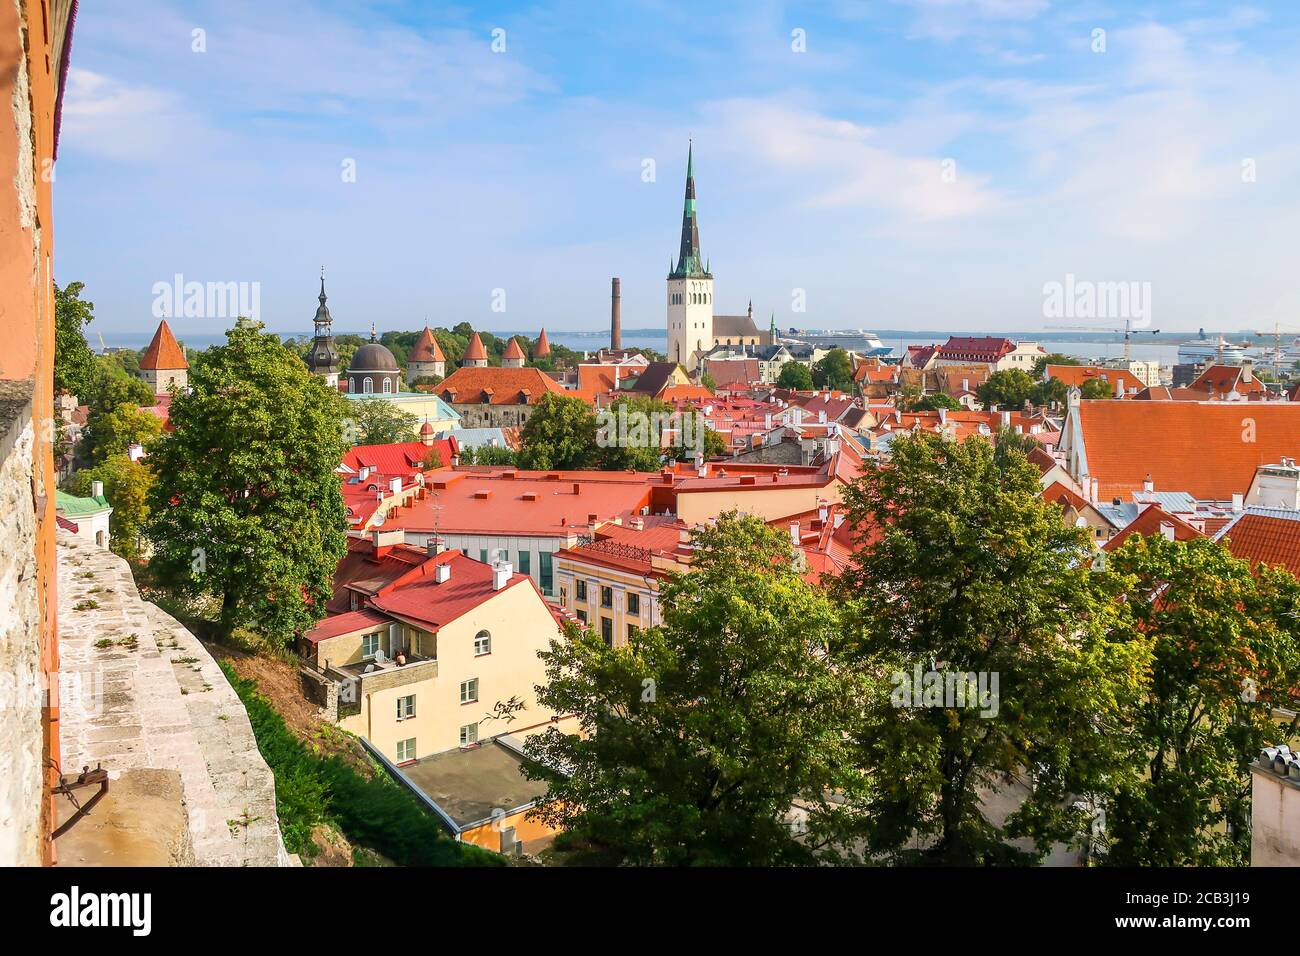 L'après-midi, vue sur la ville médiévale fortifiée de Tallinn Estonie lors d'une journée d'été dans la région Baltique de l'Europe du Nord. Banque D'Images